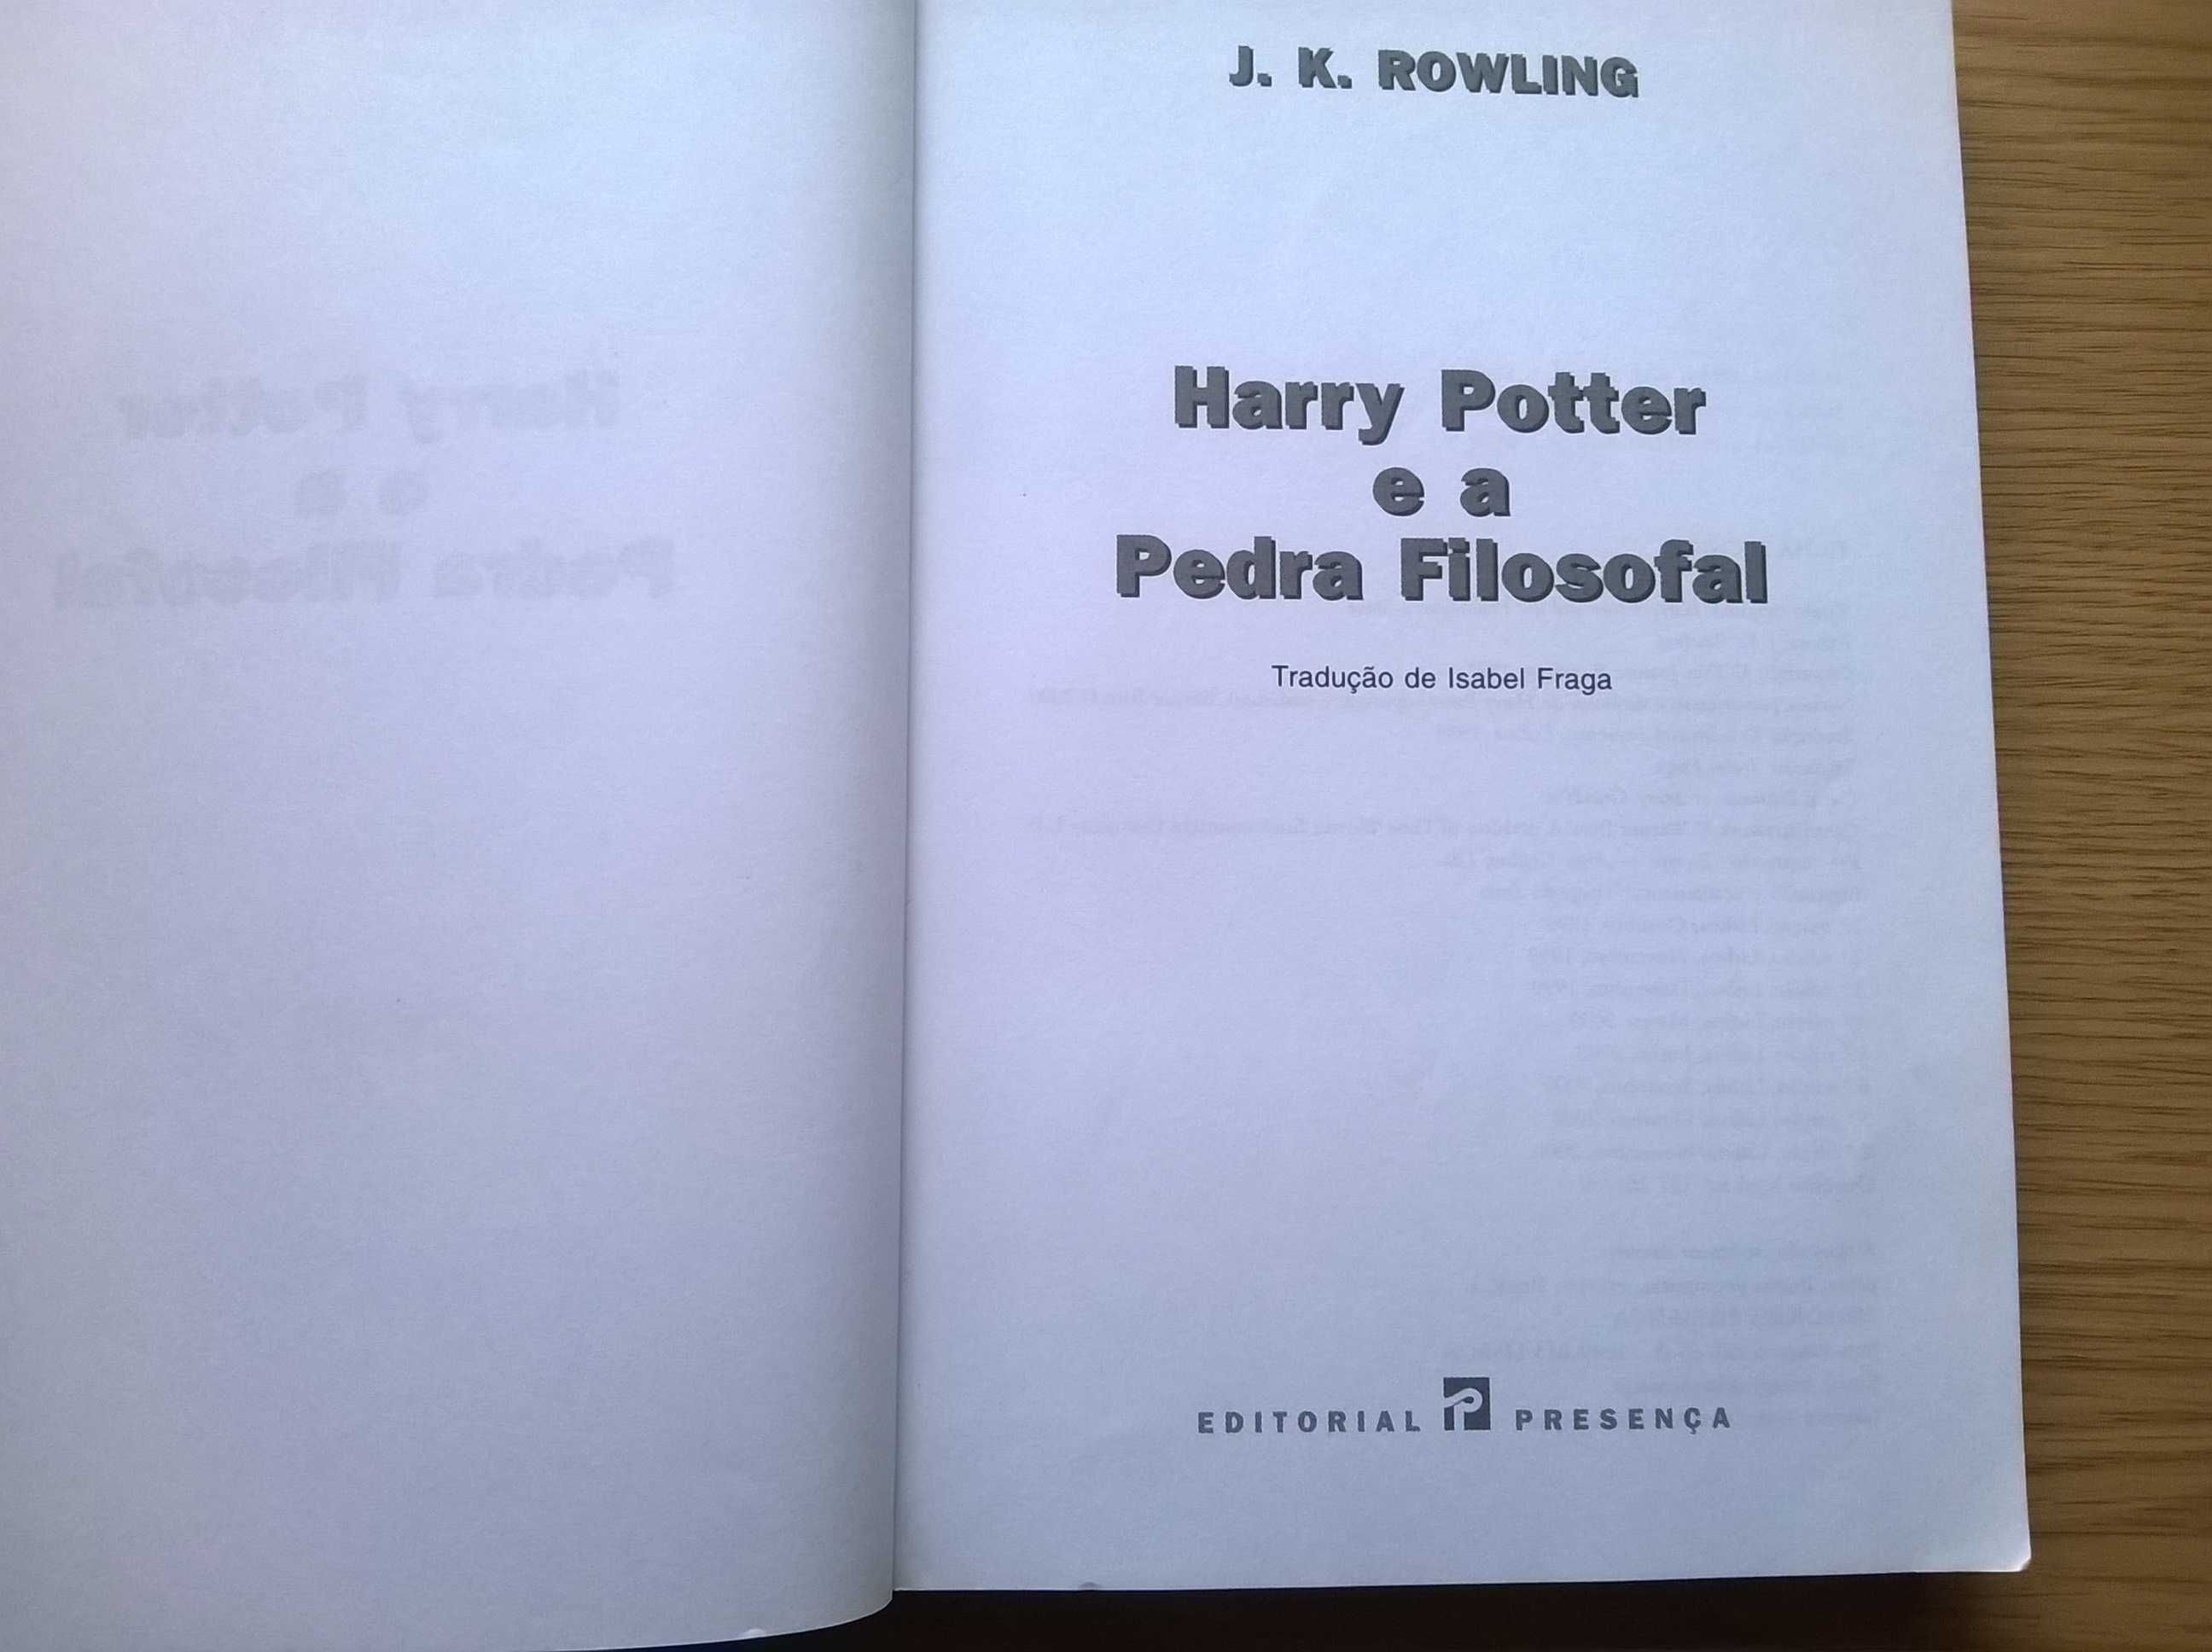 Harry Potter e a Pedra Filosofal - J. K. Rowling (portes grátis